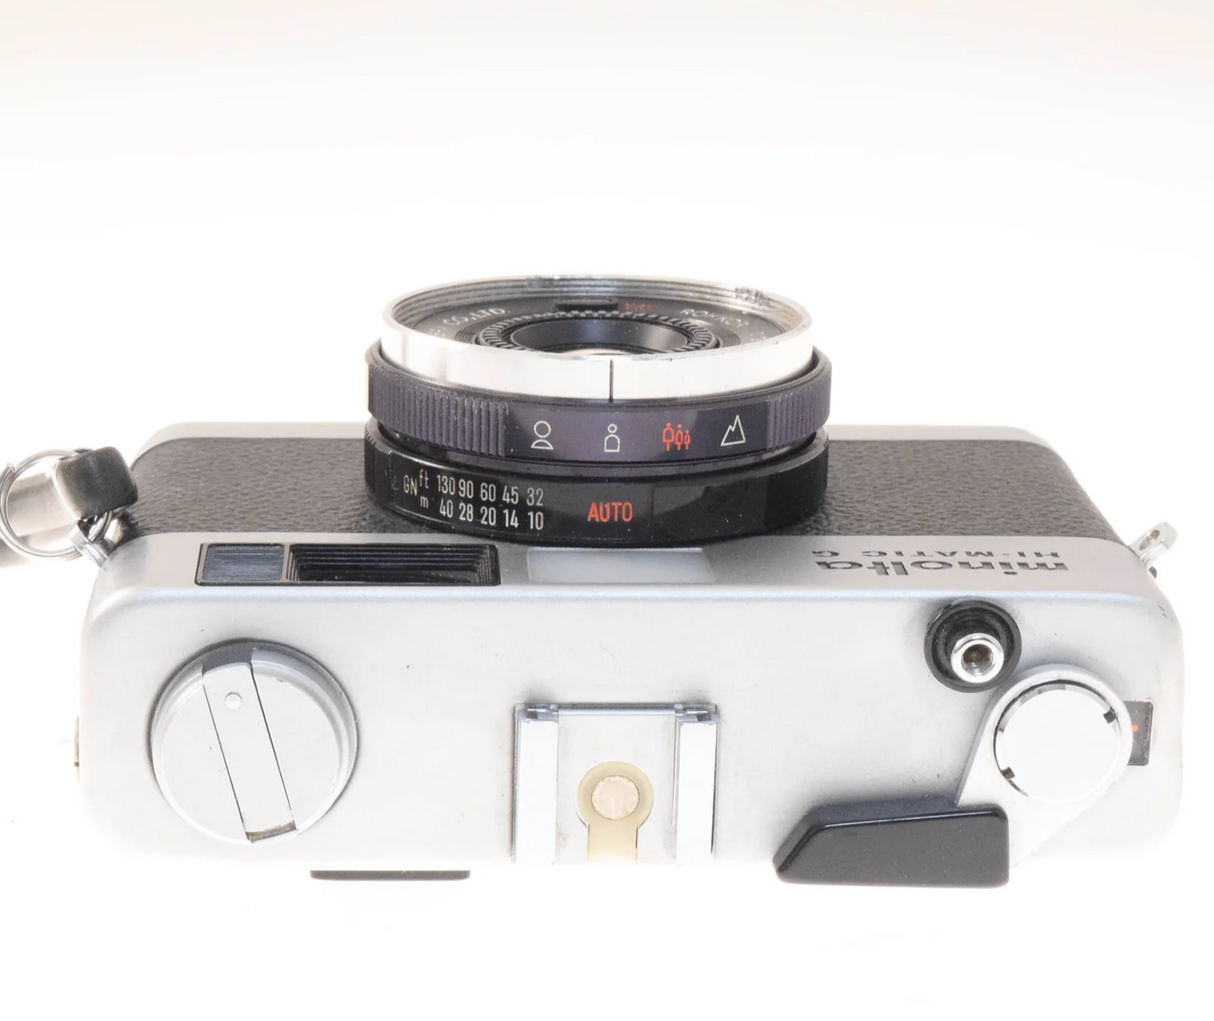 Minolta Hi-Matic G - 35mm Film Camera